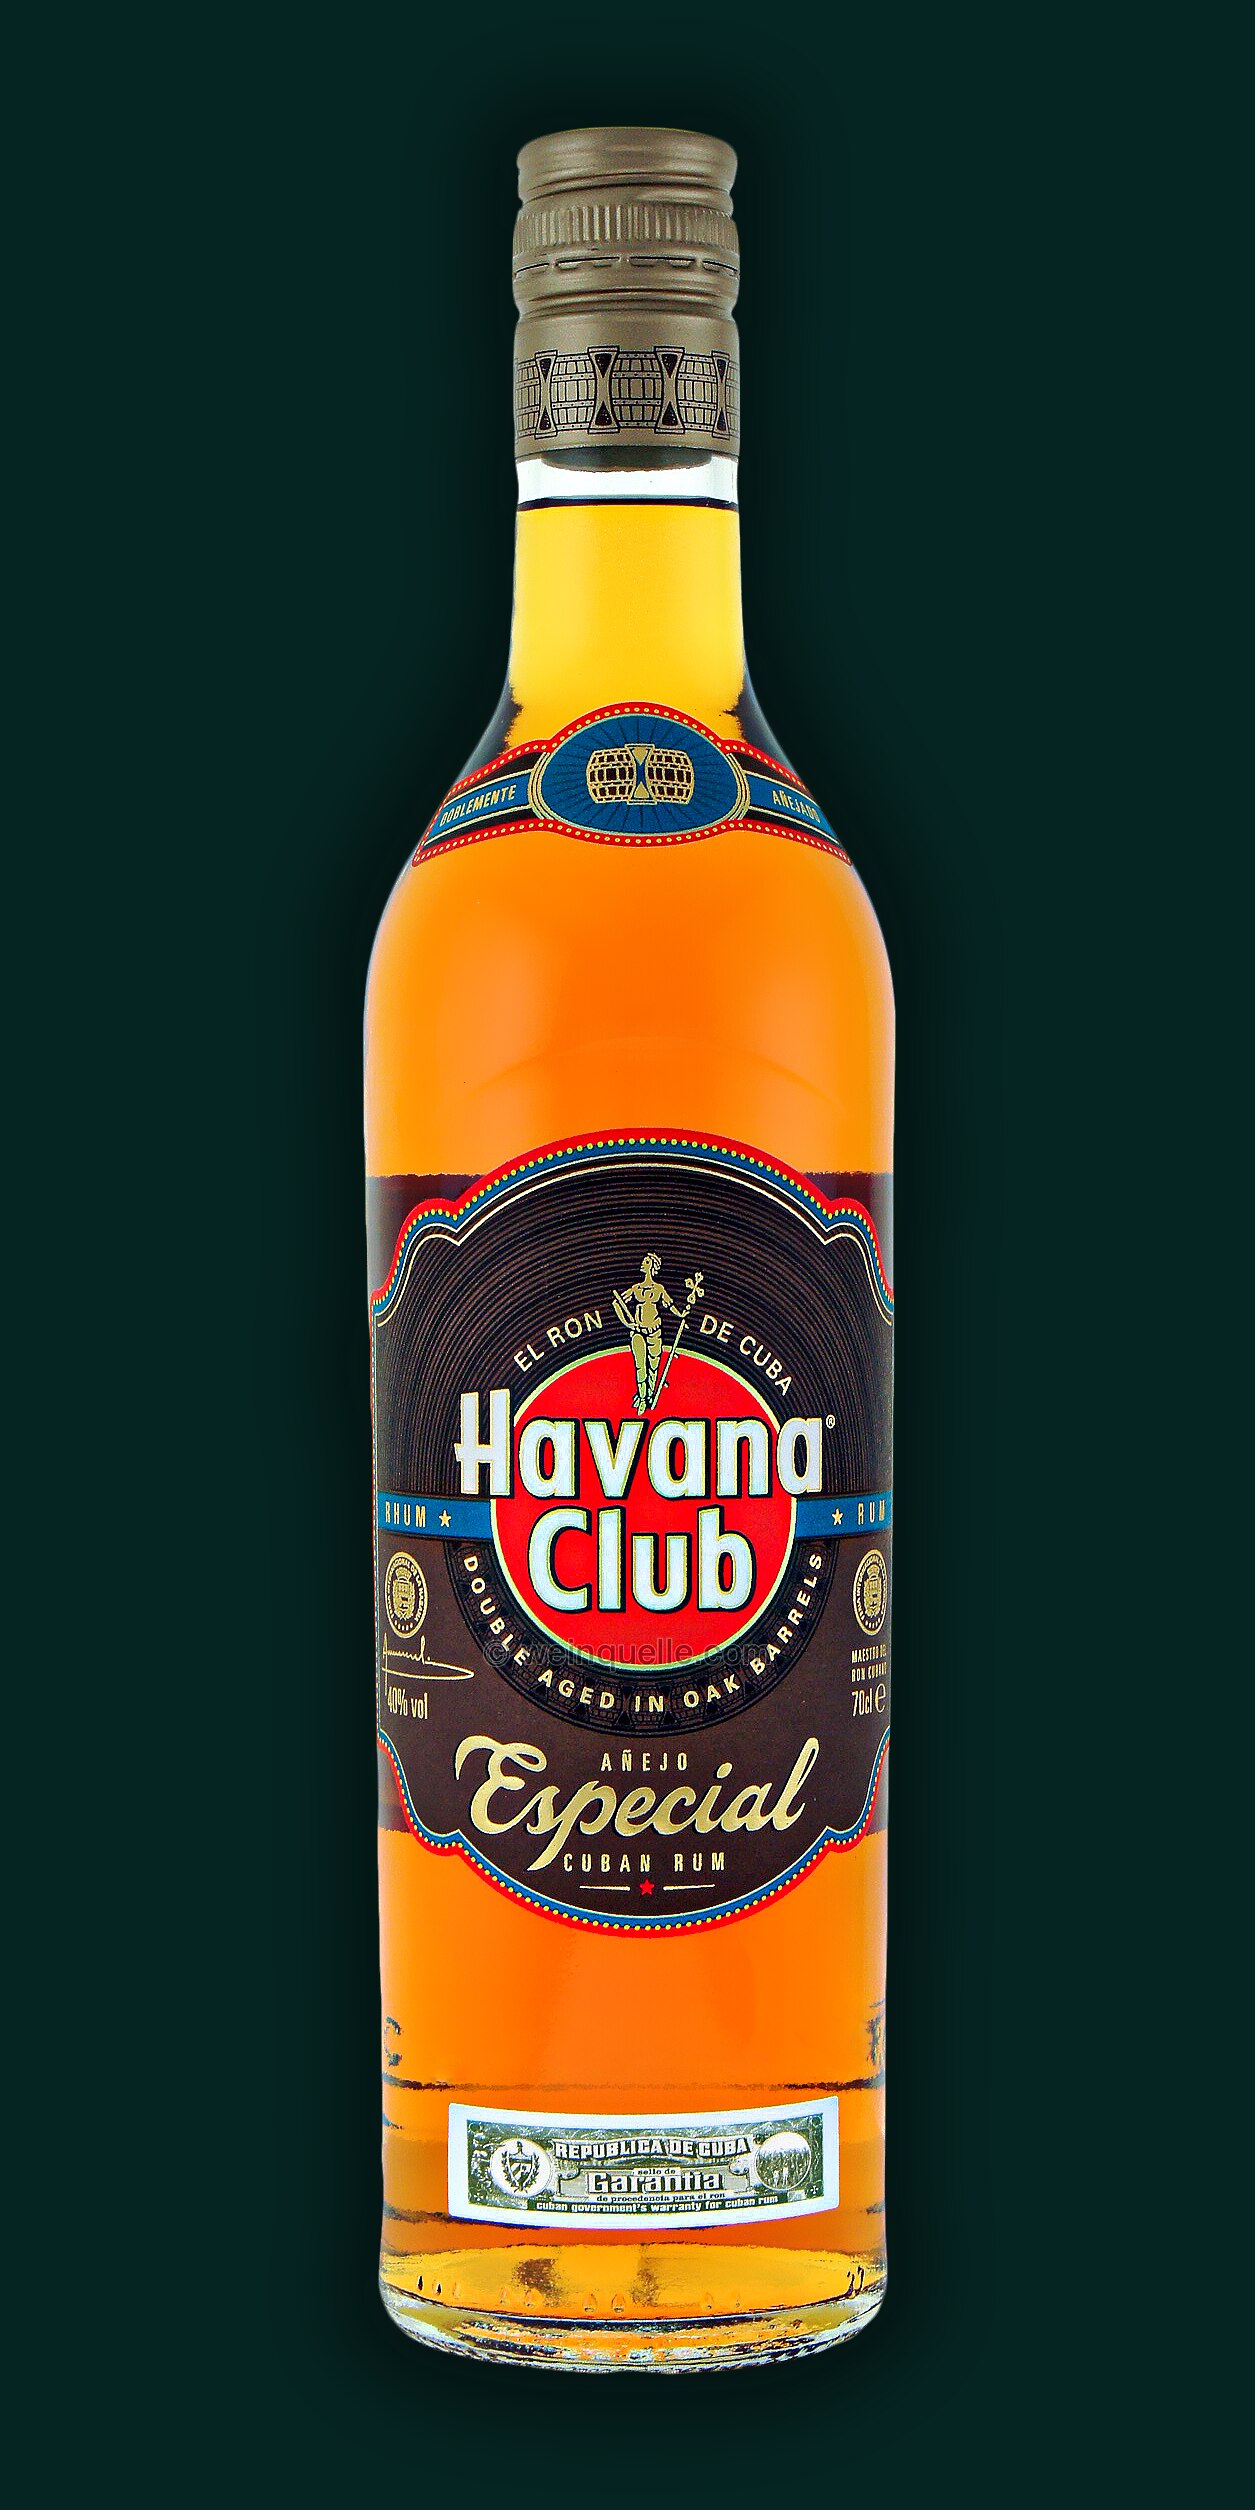 17,25 - Club € Anejo Havana Weinquelle Especial, Lühmann